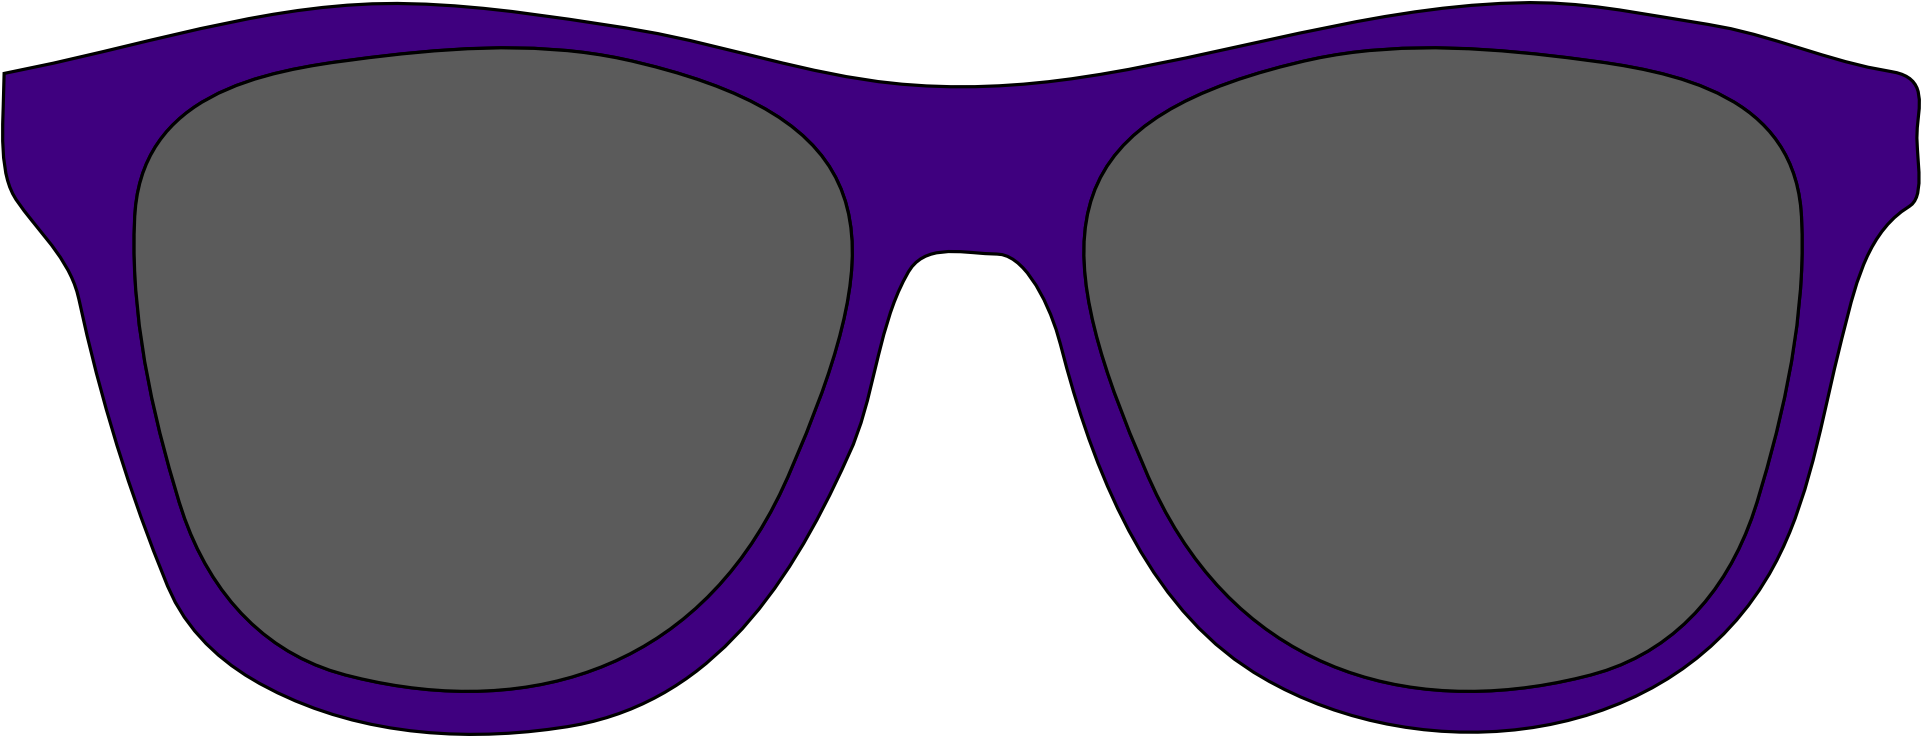 Sunglasses Goggles Clip Art - Oculos De Sol Vetor (1920x960)